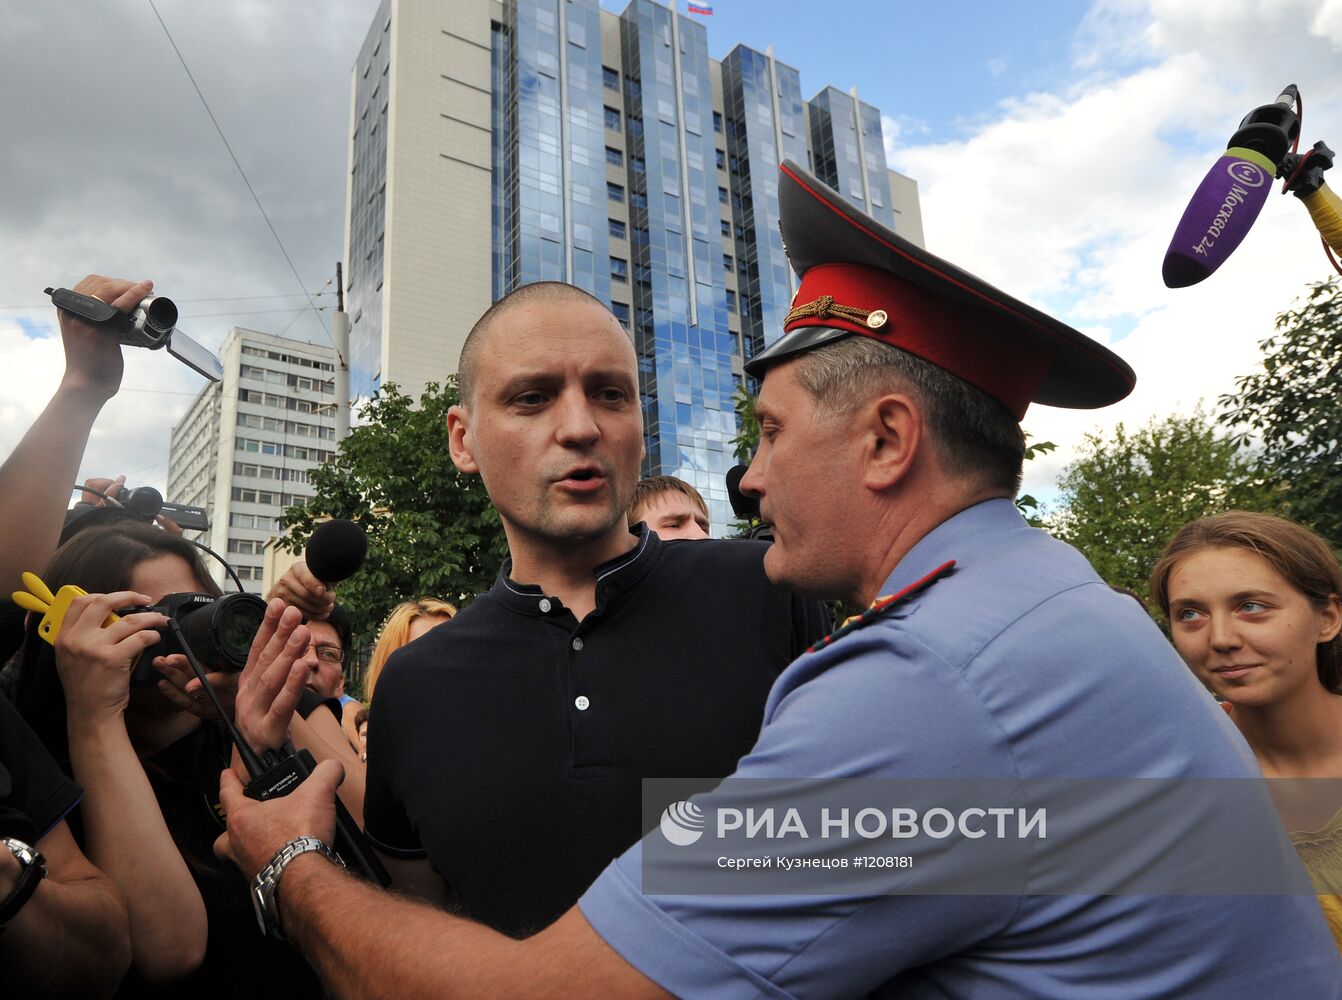 Акция "Оккупай СК" в защиту политзаключенных в Москве